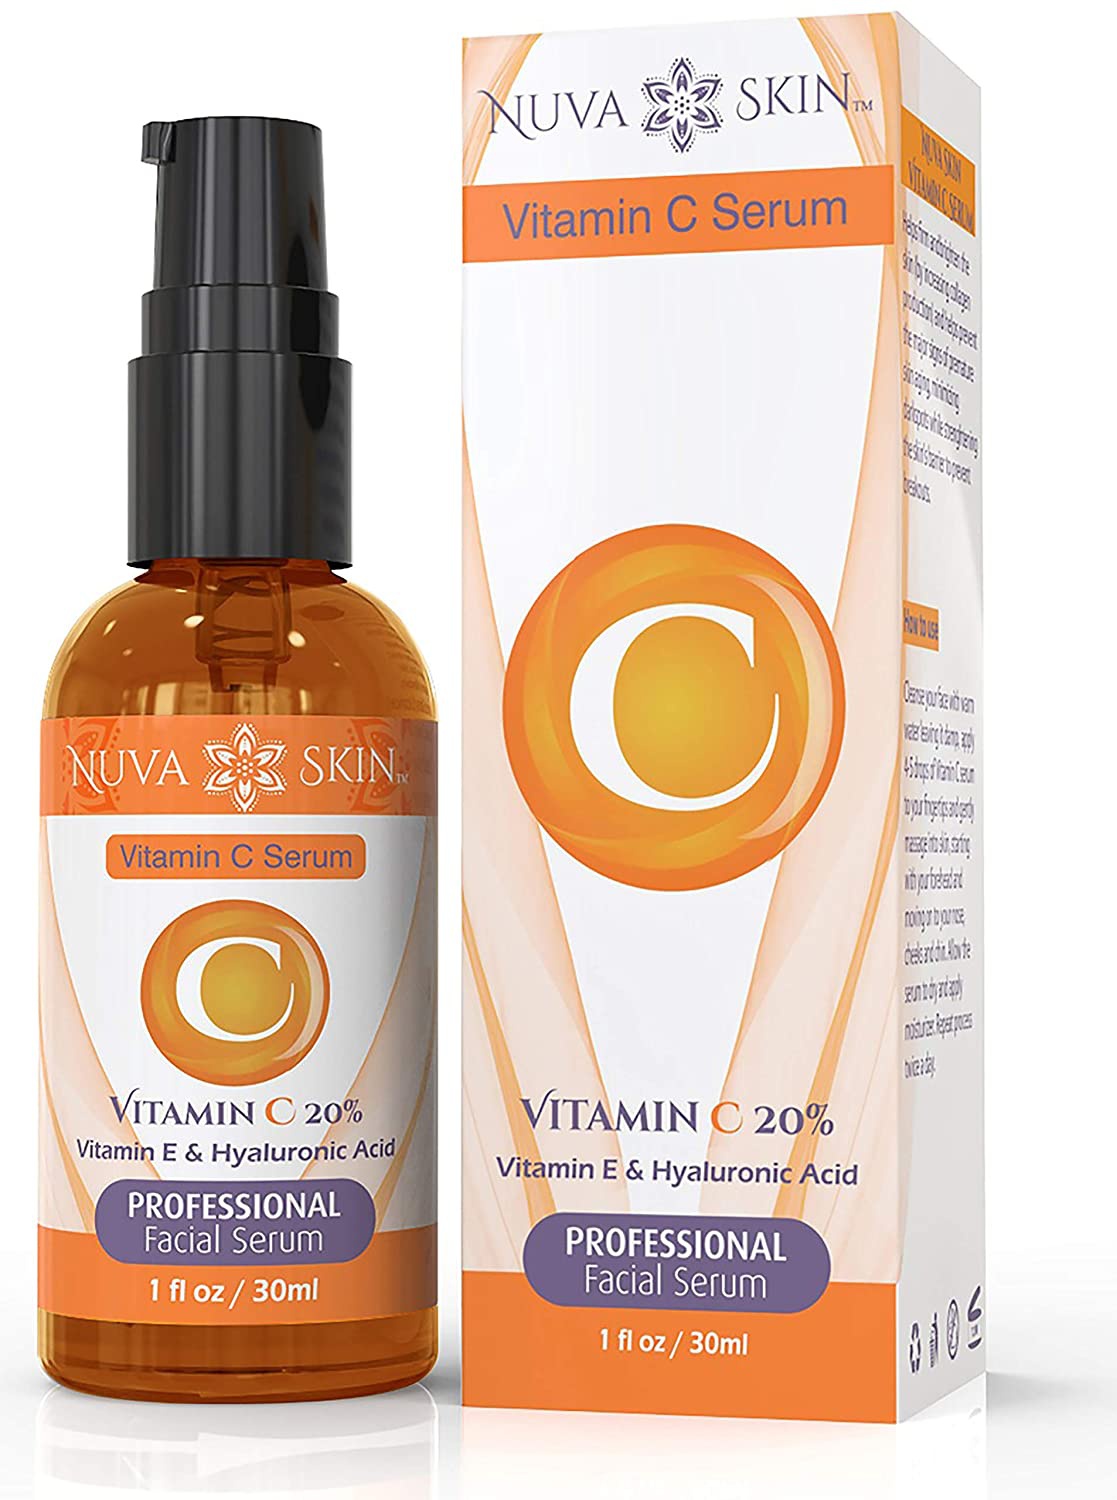 Nuva Skin Vitamin C Serum